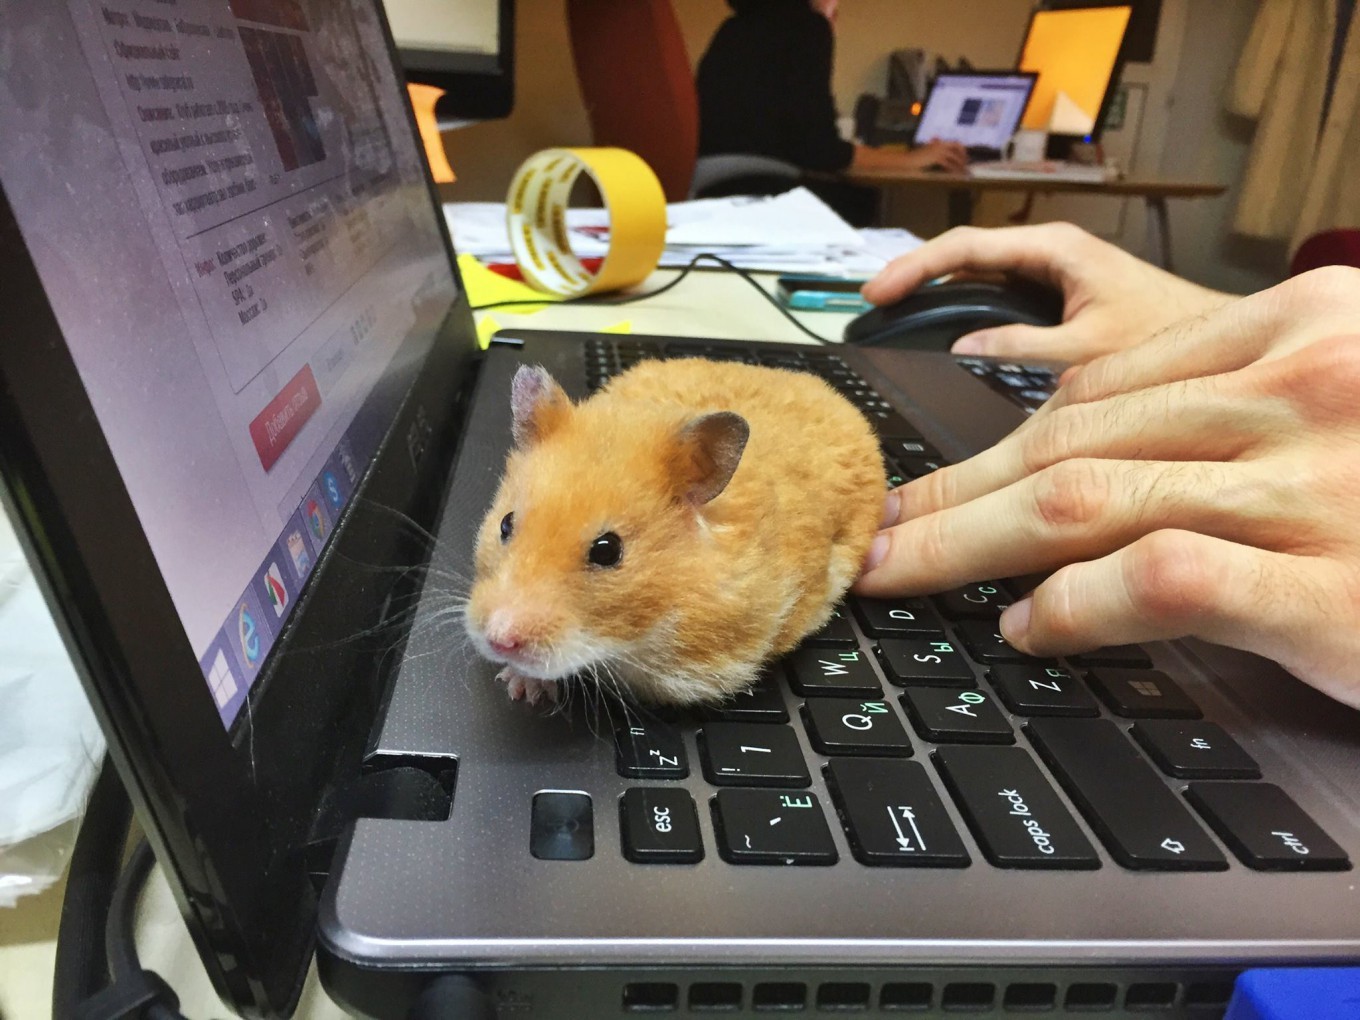 Sad hamster violin hamster. Офисные хомячки. Хомяк в офисе. Домашние питомцы хомяк. Хомячок играется.